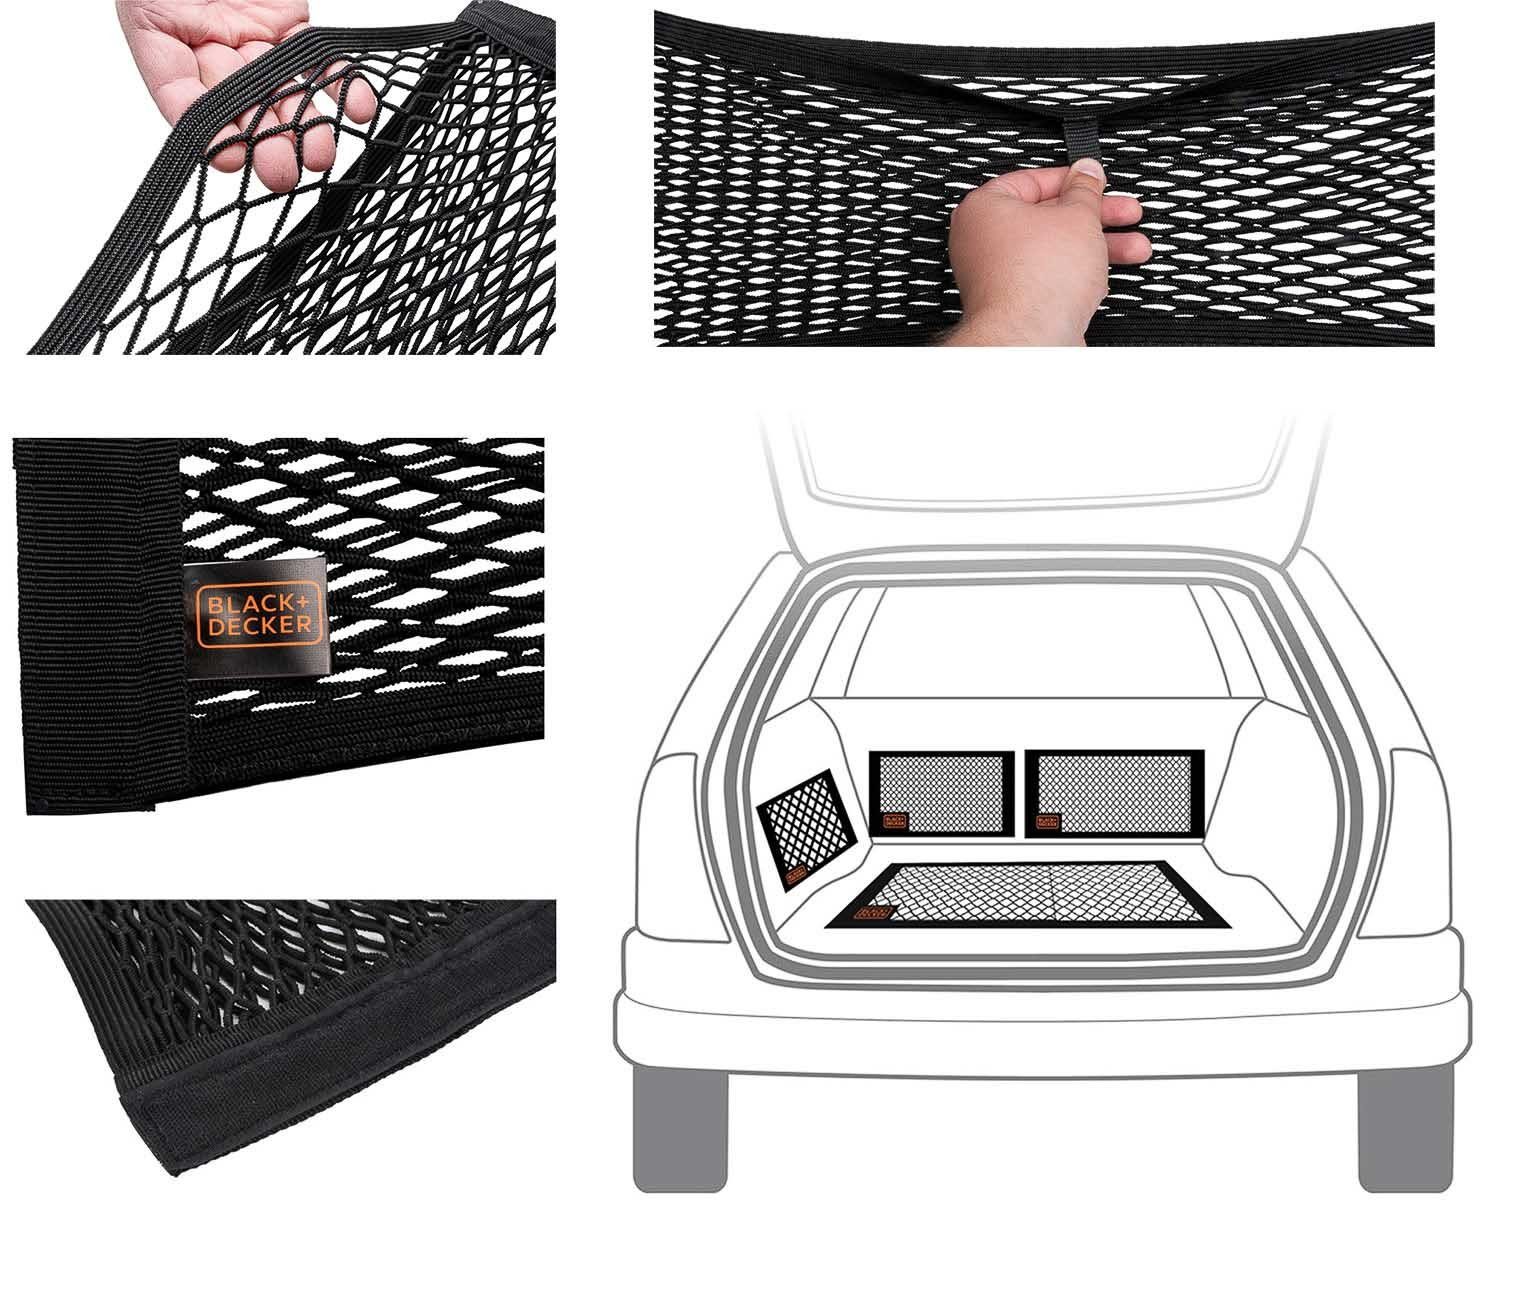 Netz Kofferorganizer Kofferraum Auto organizer Black+Decker aufbewahrungsnetze,